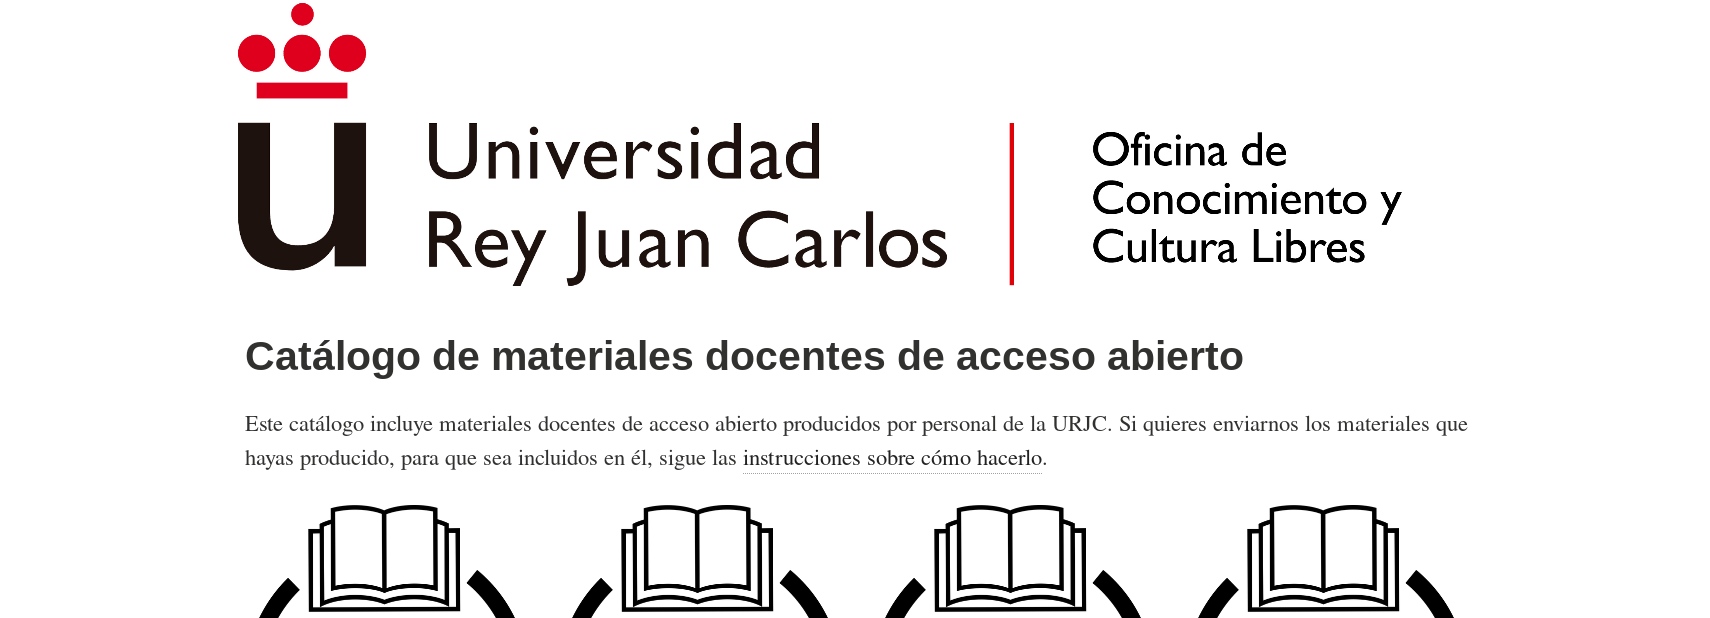 Catálogo de materiales docentes en acceso abierto